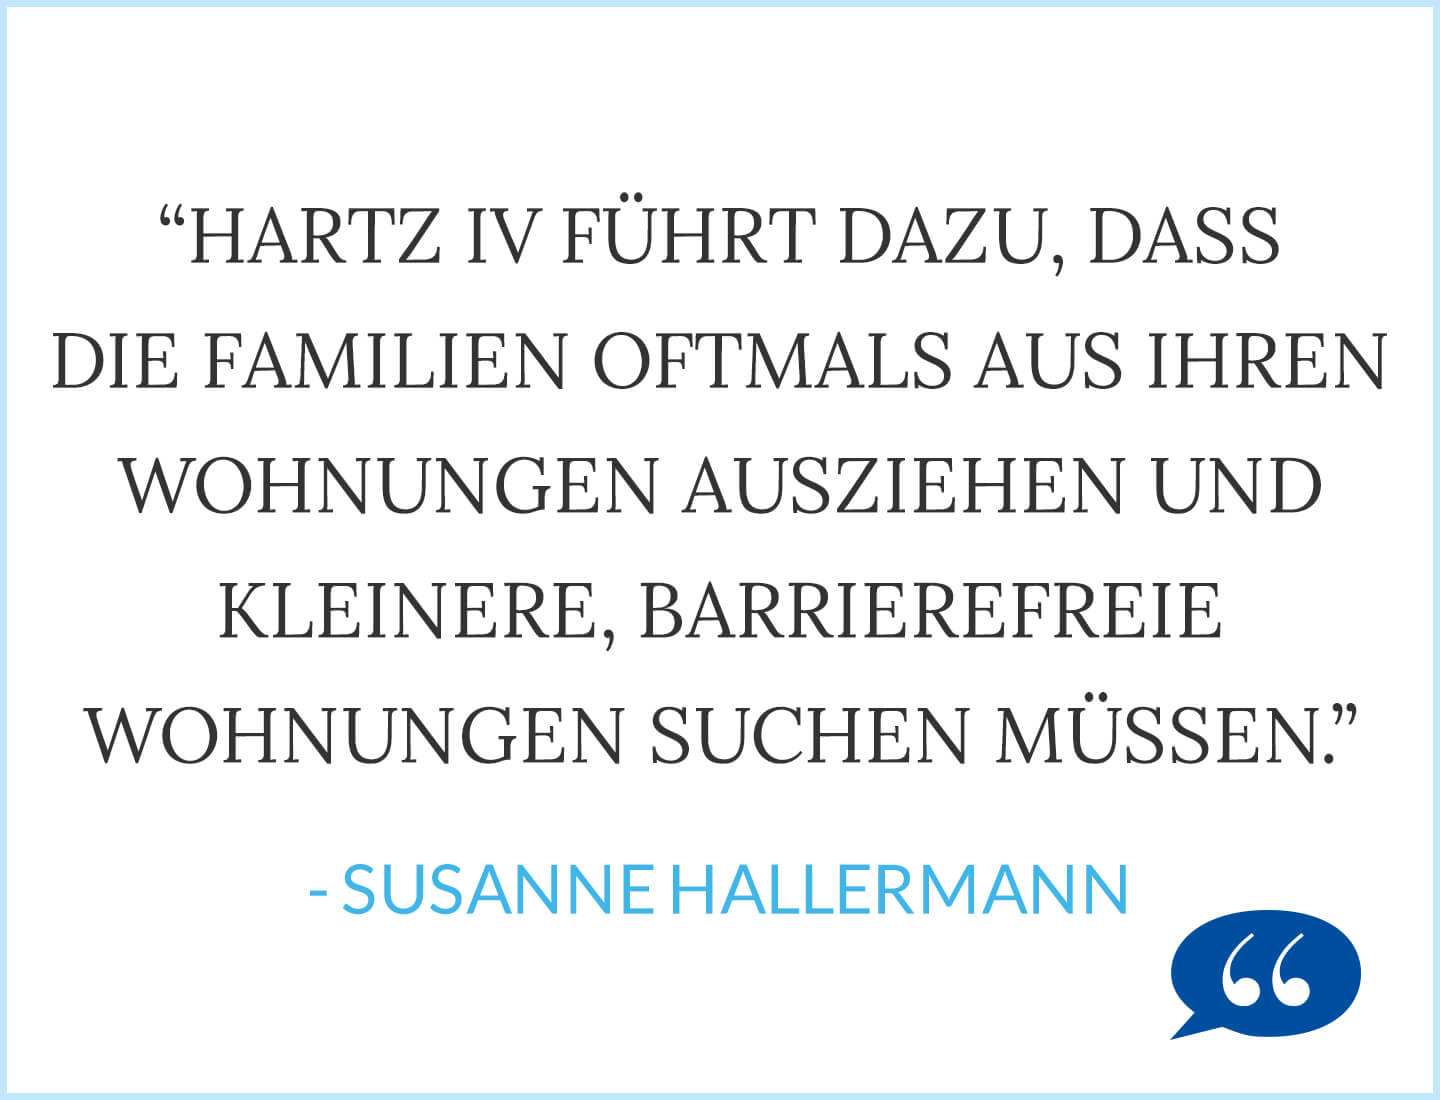 Hartz IV führt dazu, dass die Familien oftmals aus ihren Wohnungen ausziehen und kleinere Barrierefreie Wohnungen suchen müssen. - Susanne Hallermann